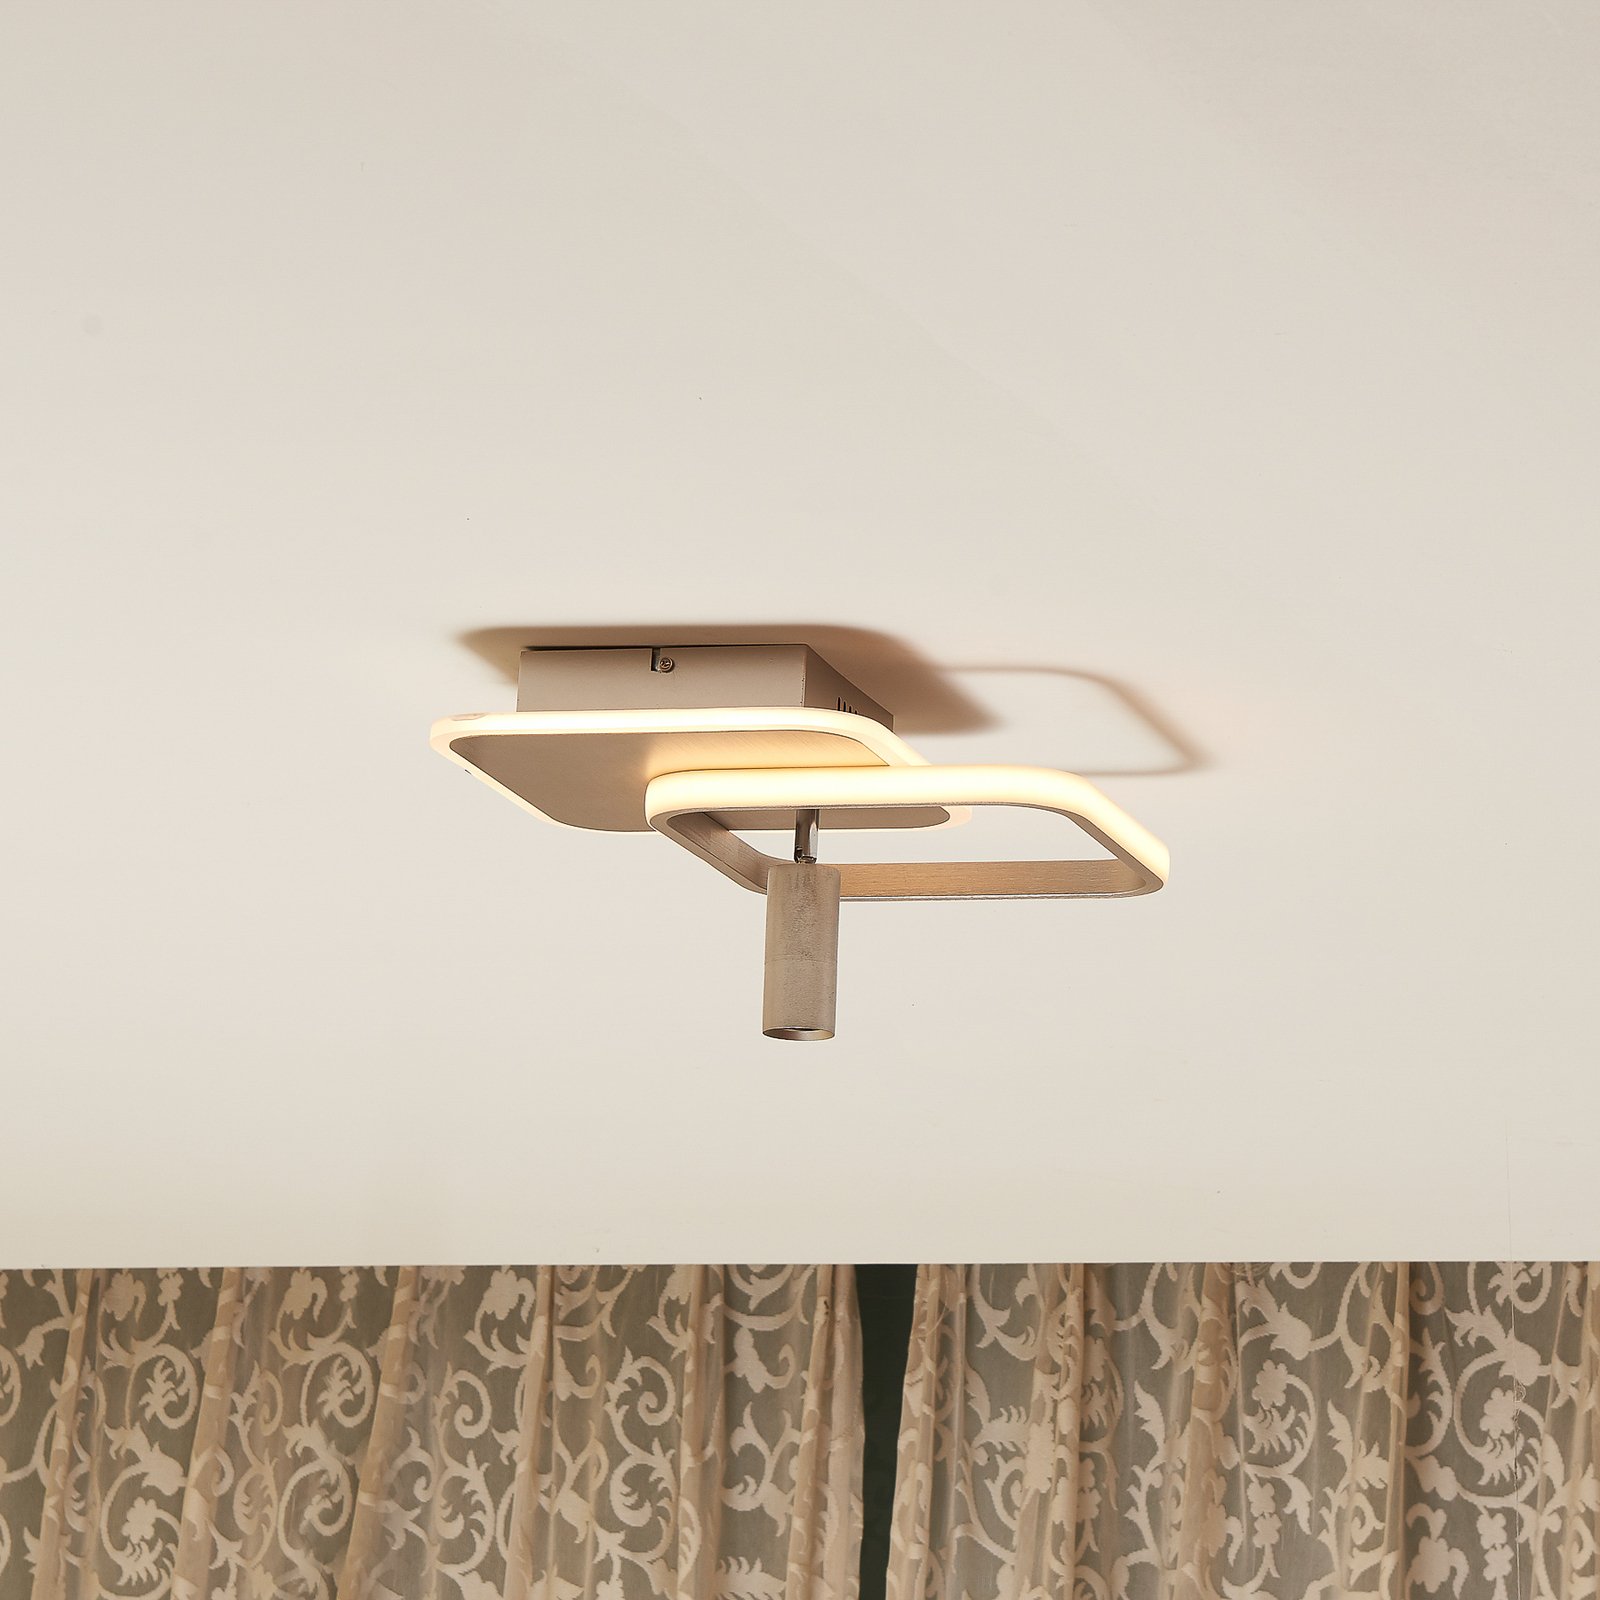 Lucande Tival LED-Deckenlampe, eckig, 34cm, nickel